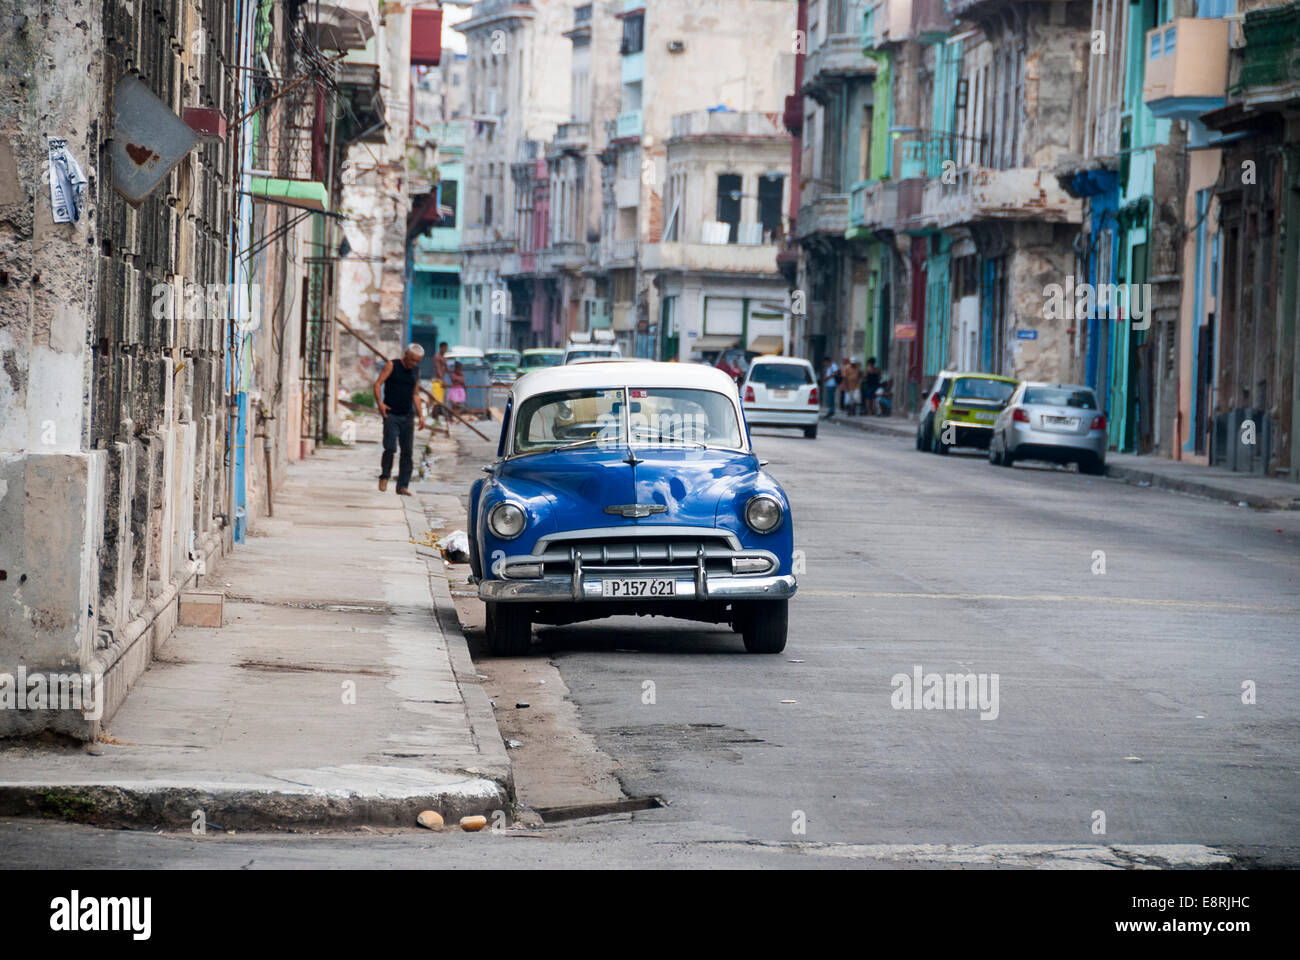 Edifici fatiscenti e vintage American cars utilizzato come i taxi sono una visione comune nel distretto centrale di La Habana Foto Stock